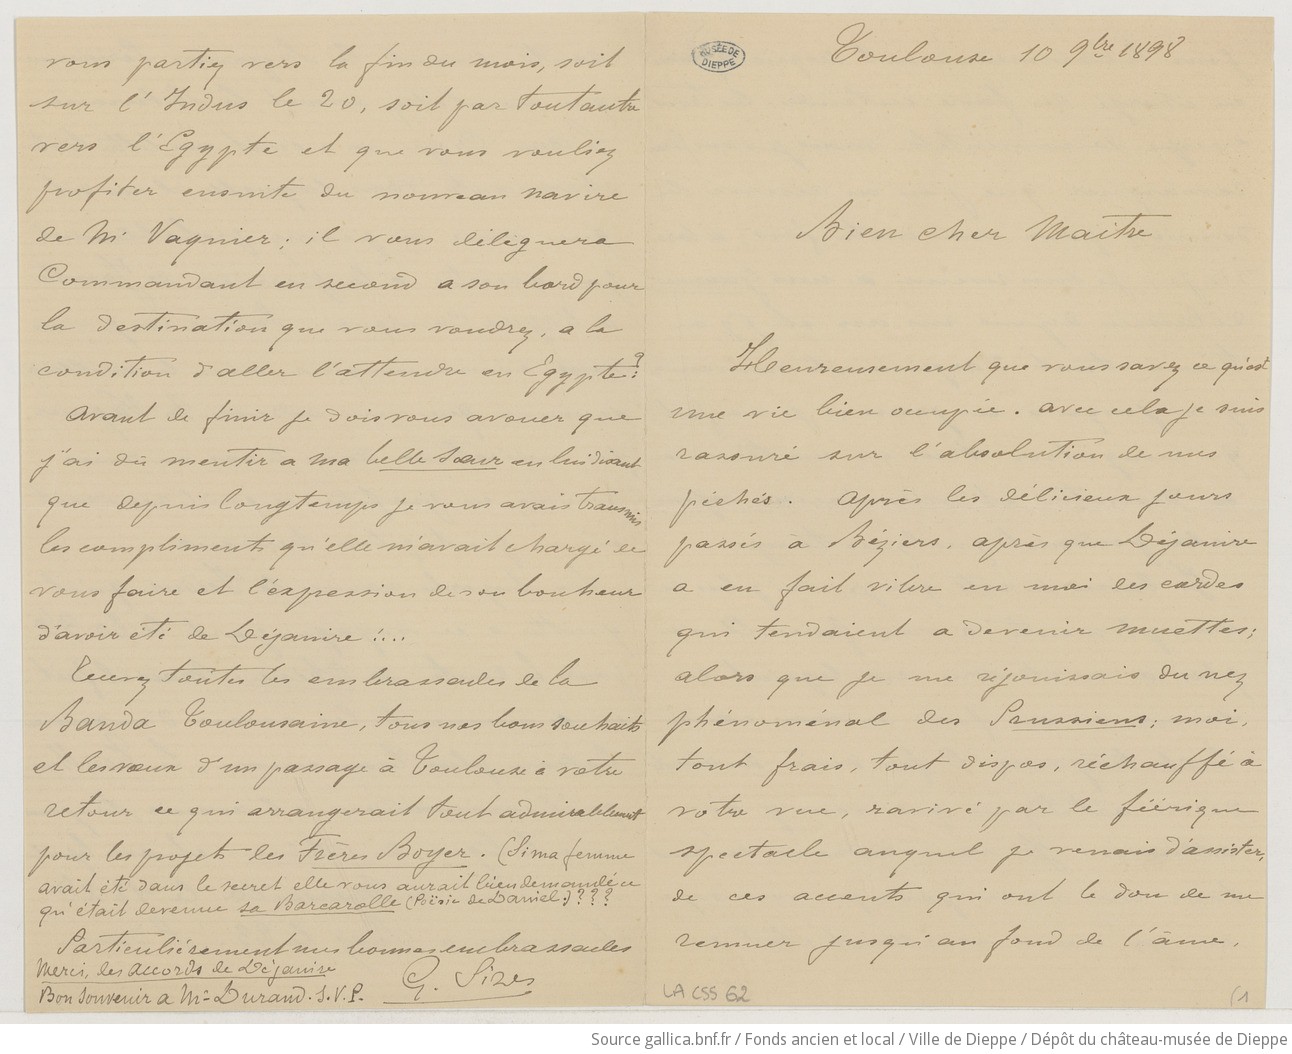 [37 lettres de Gabriel Sizes à Camille Saint-Saëns] (manuscrit autographe)